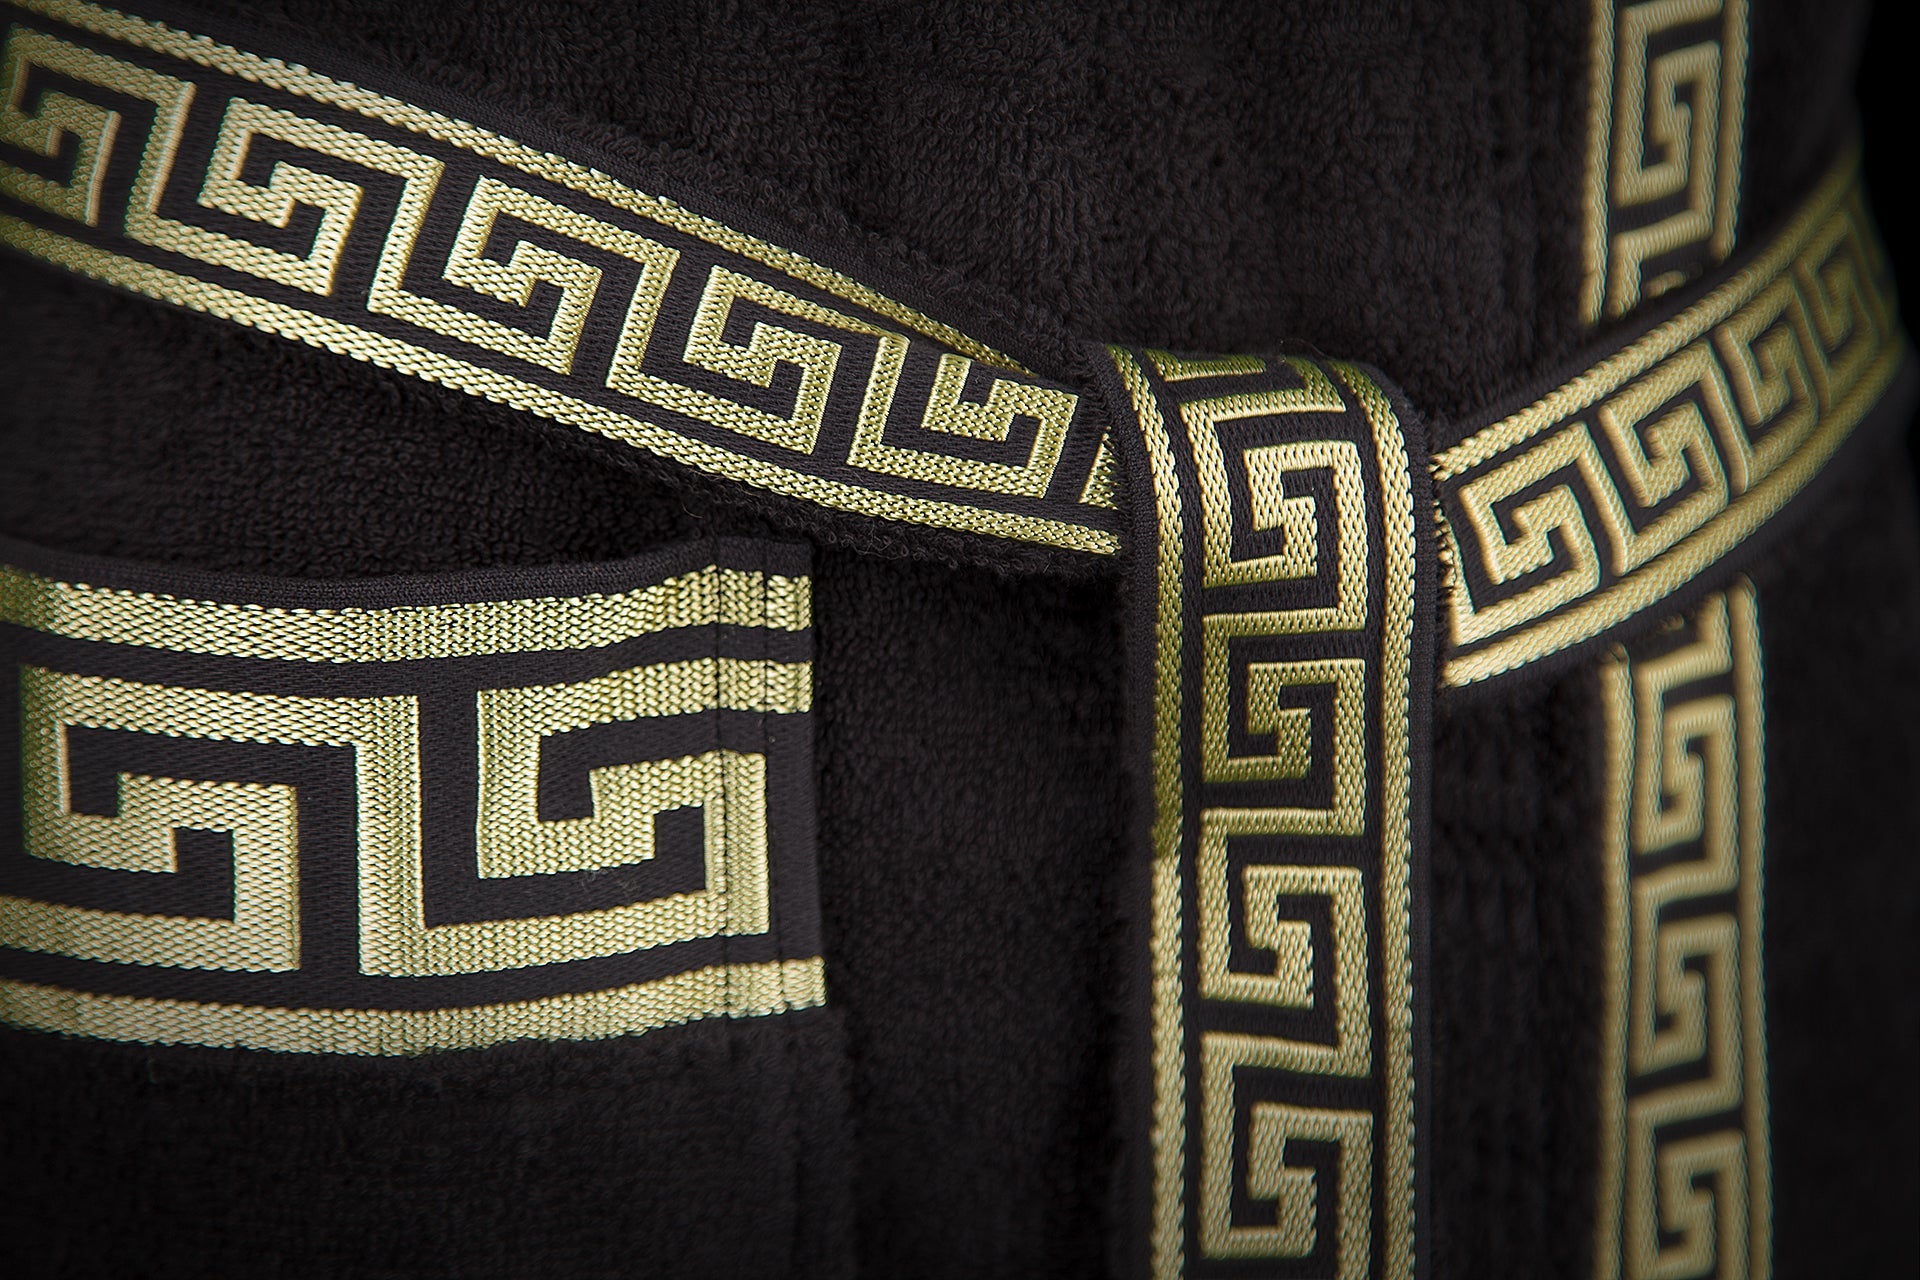 Luxus Bademantel Kimono Mäander in schwarz gold für Damen & Herren - 100% Baumwolle